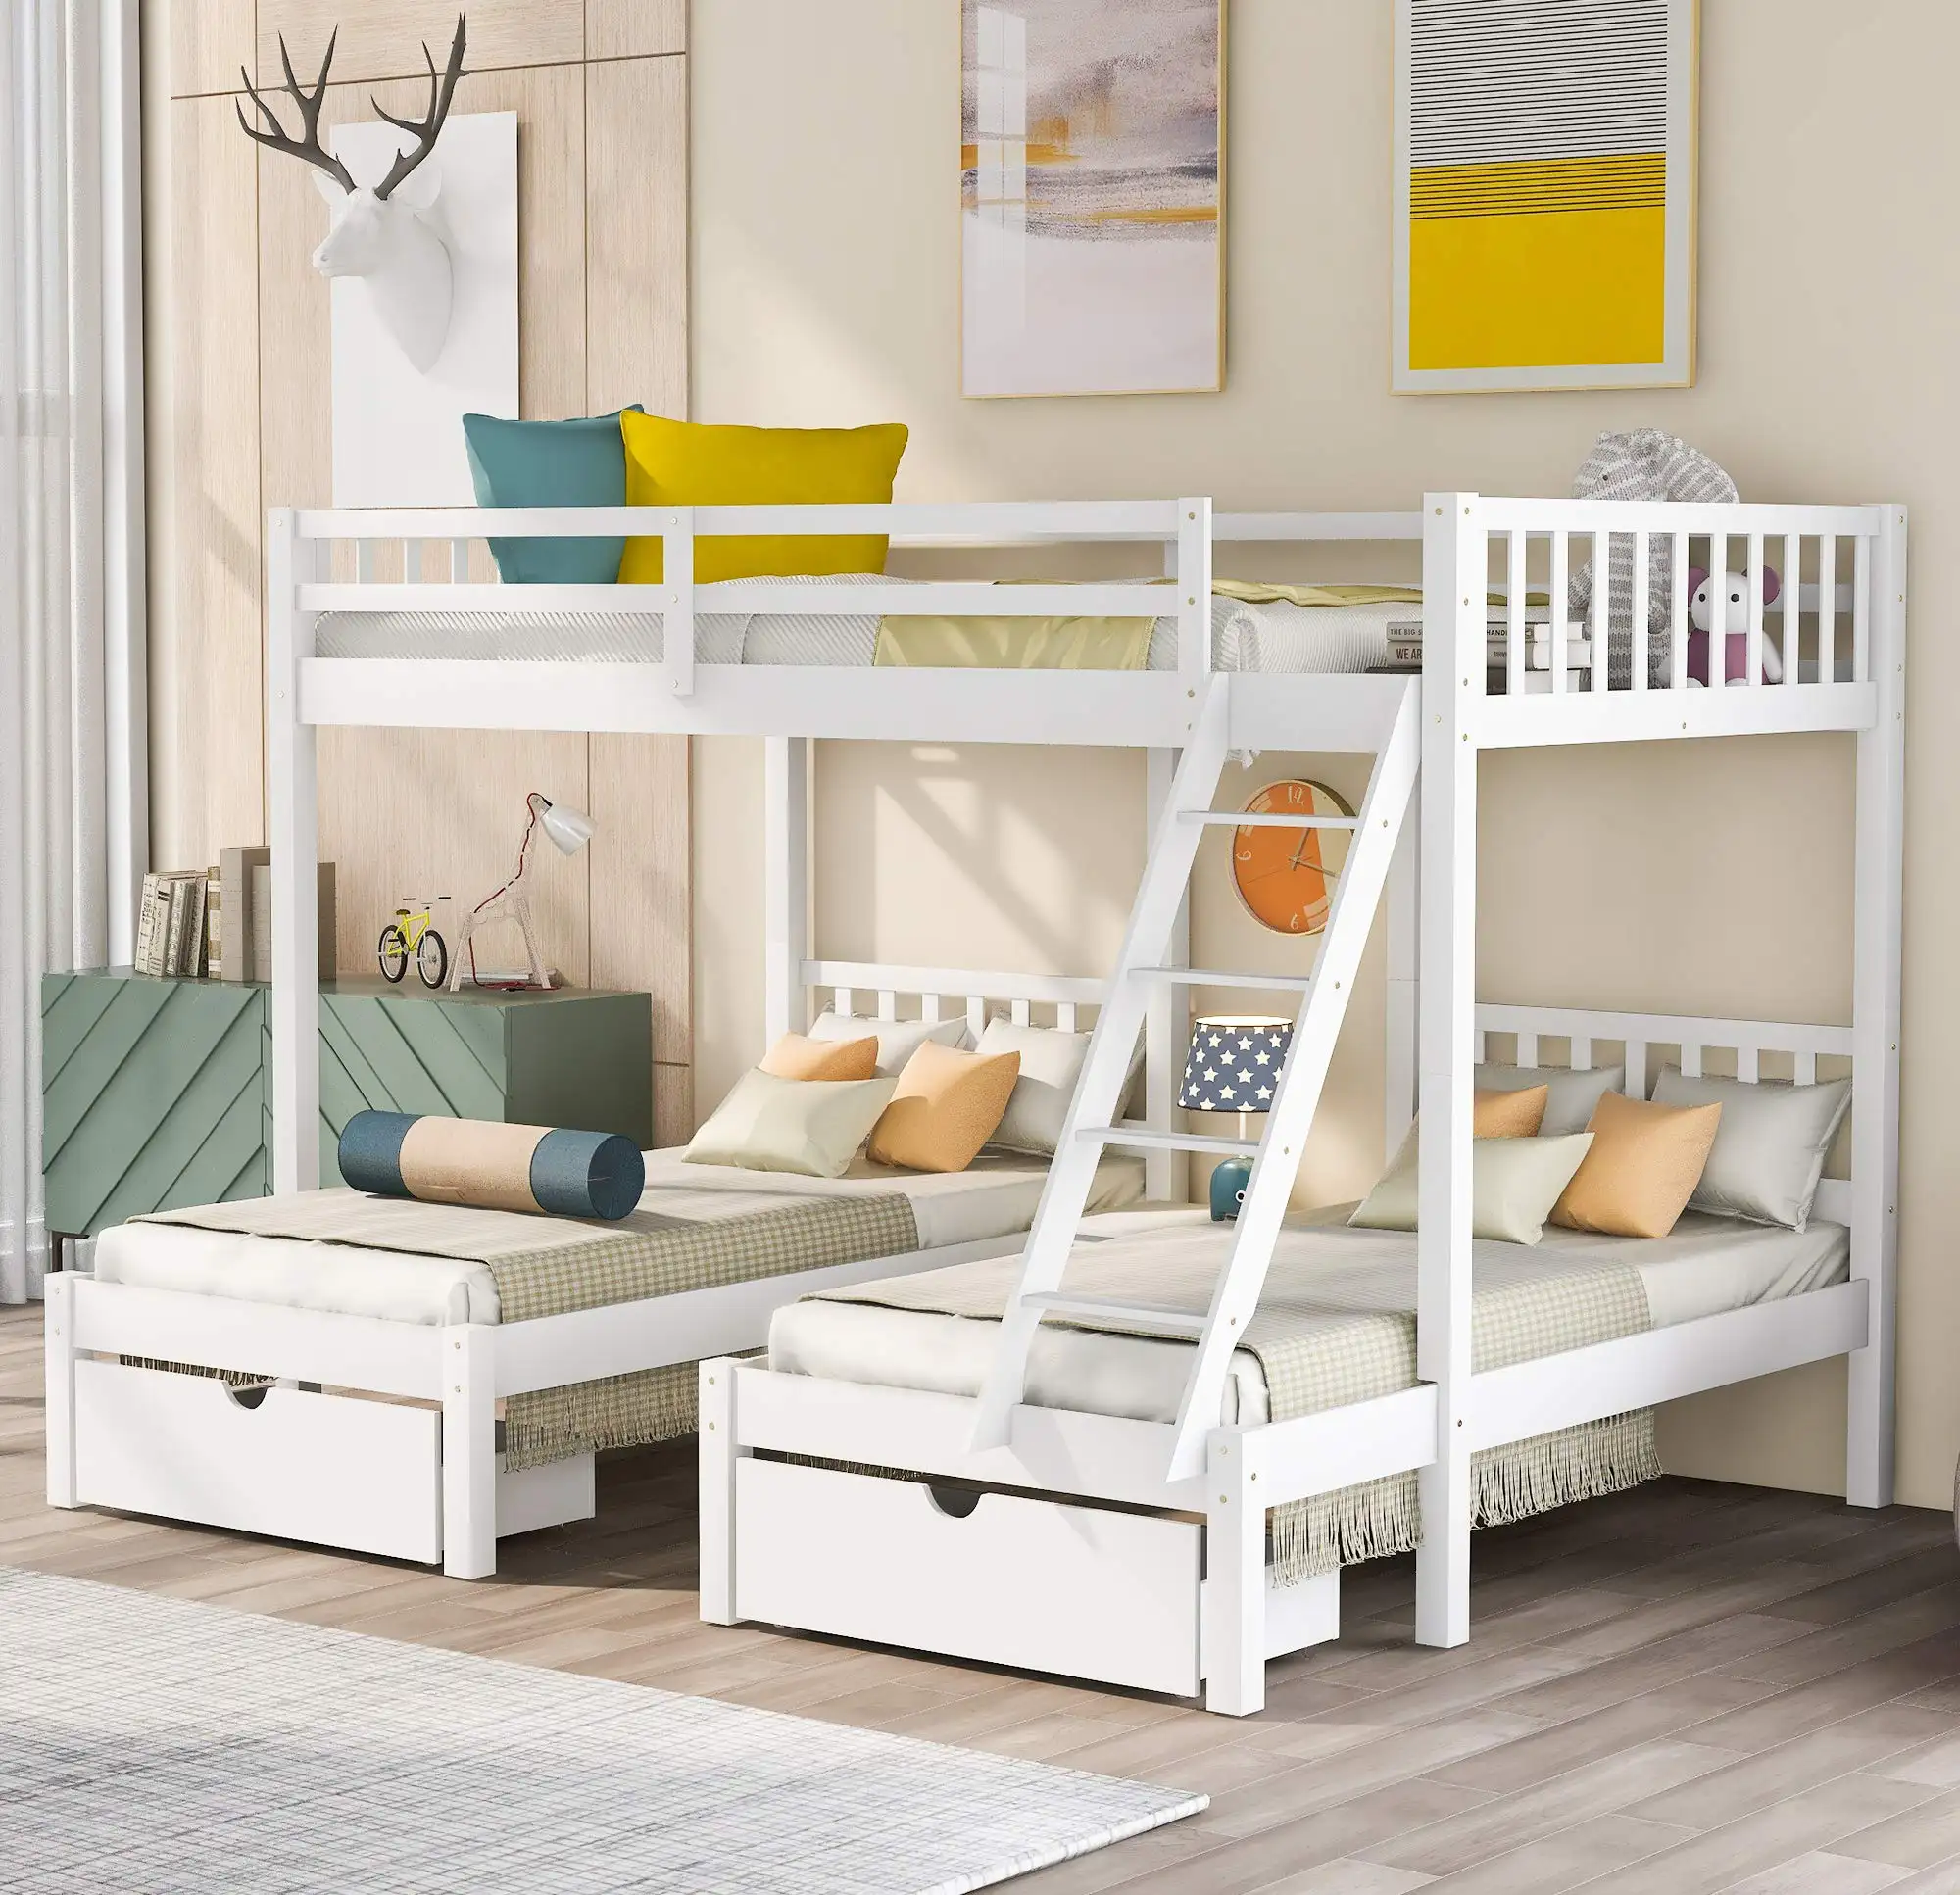 Sıcak satış basit çocuk yatak odası mobilya yatak odası takımları ahşap çocuk ranza yatak odası mobilya